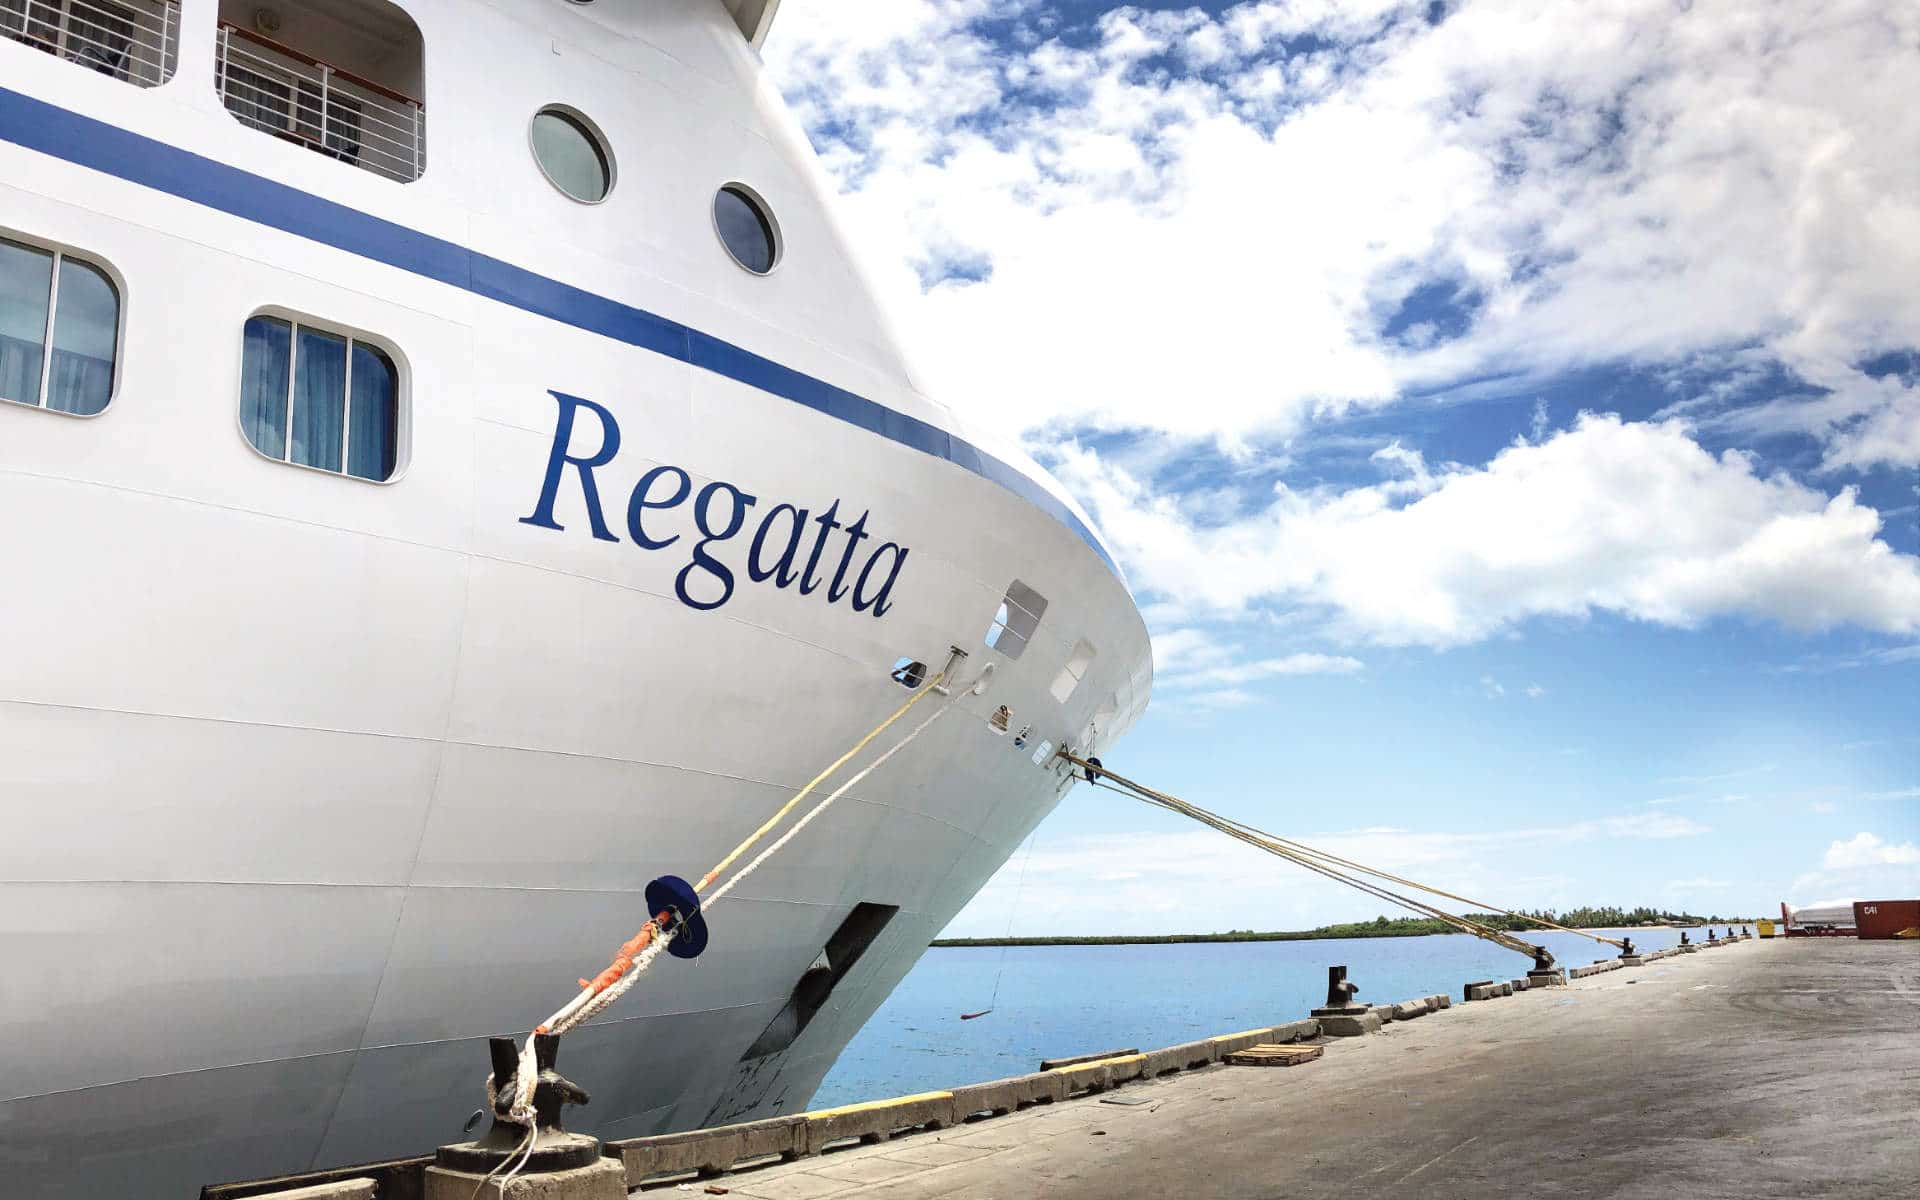 Oceania Regatta cruise ship.